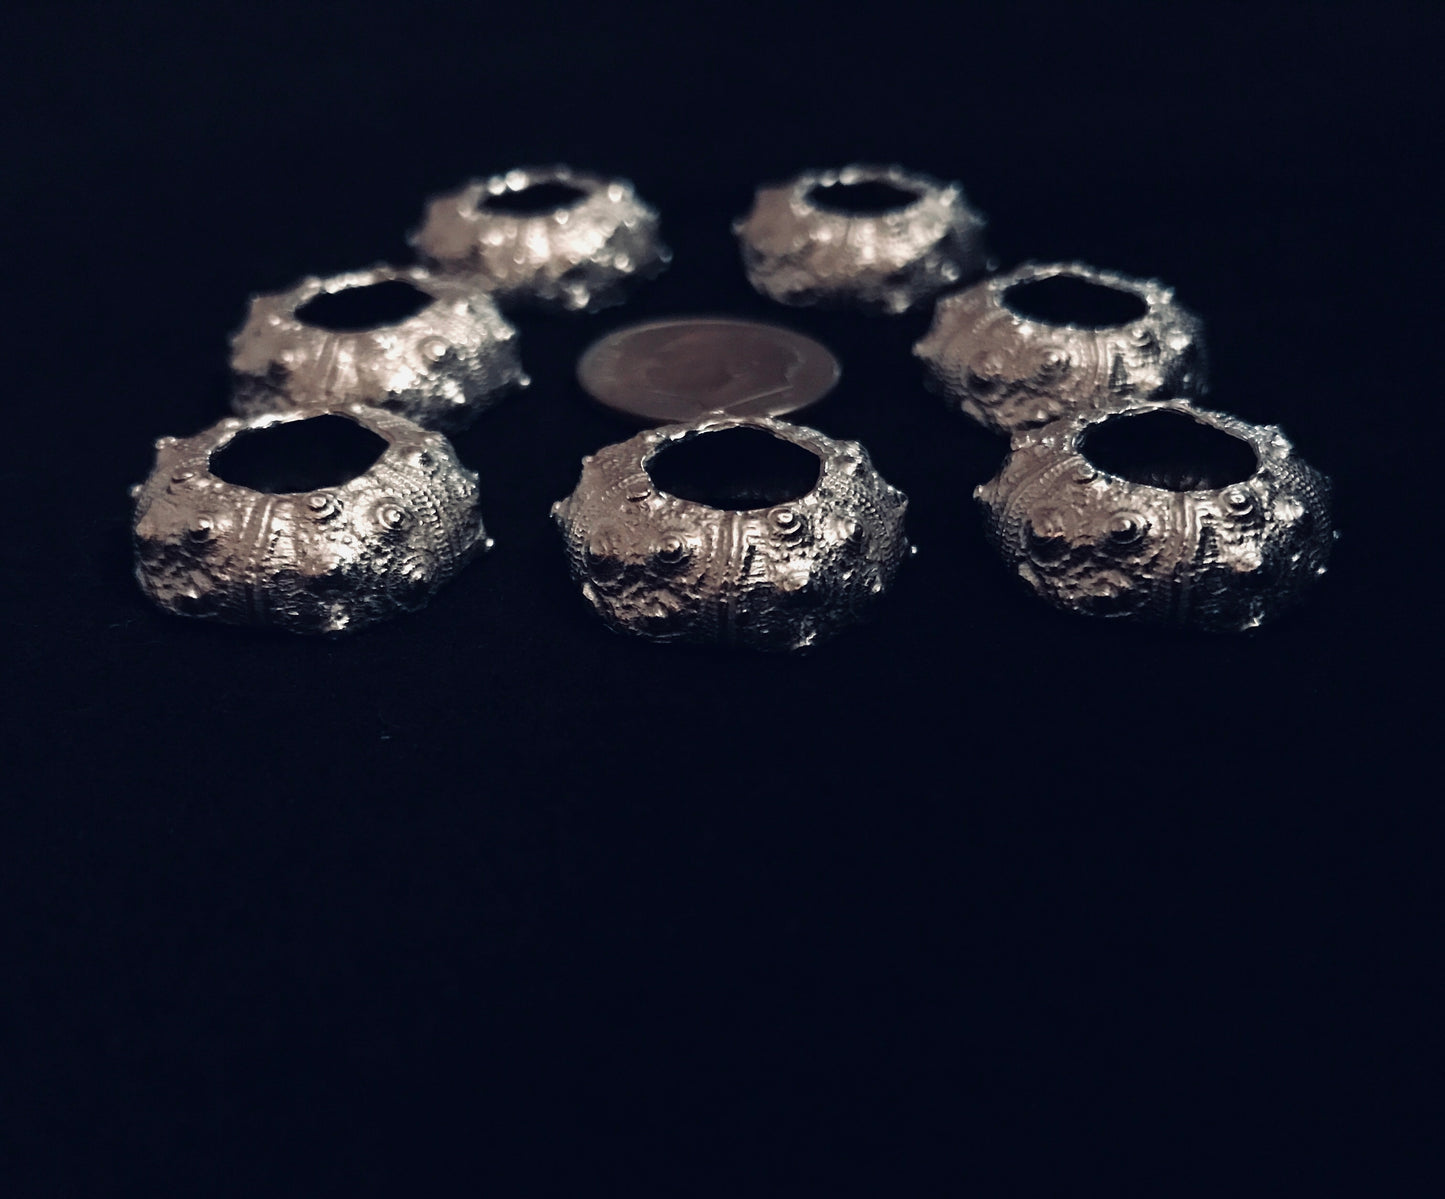 Cast Sea Urchin Half for Jewelry Design